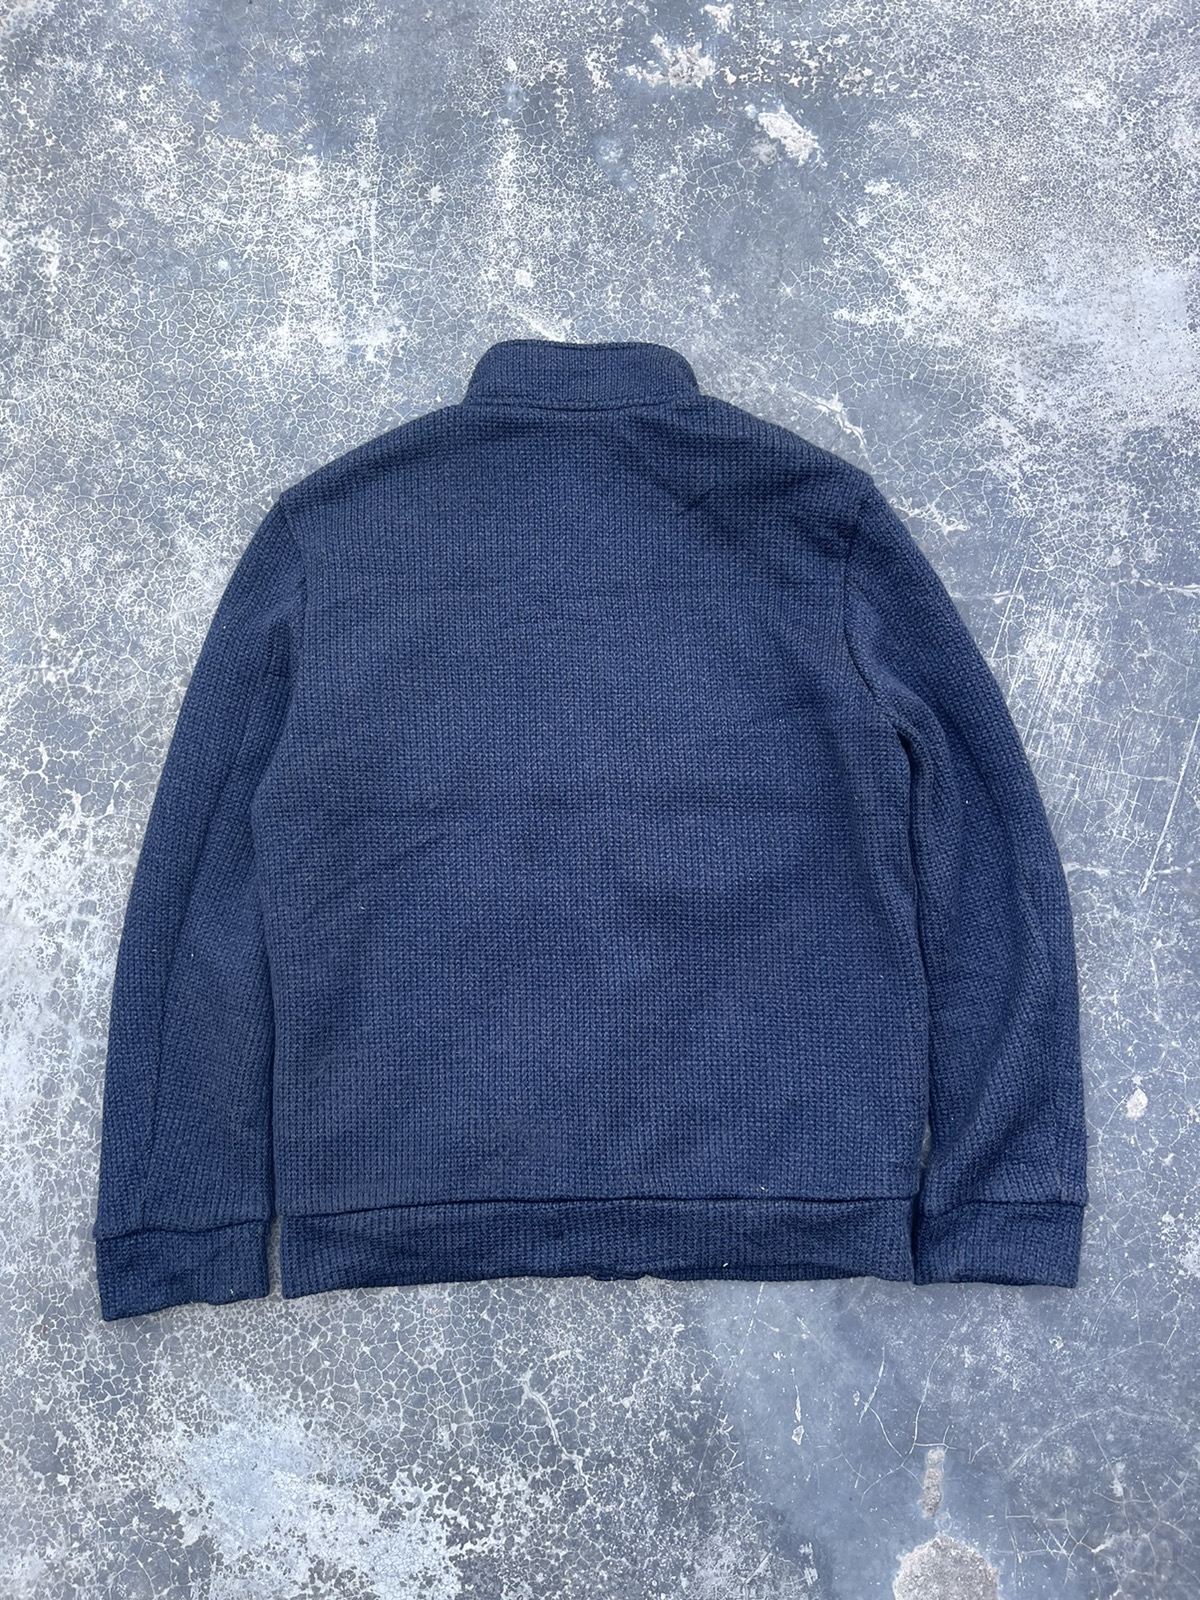 Kansai Yamamoto - Kansai Yamamoto Knitted wool light jacket - 2